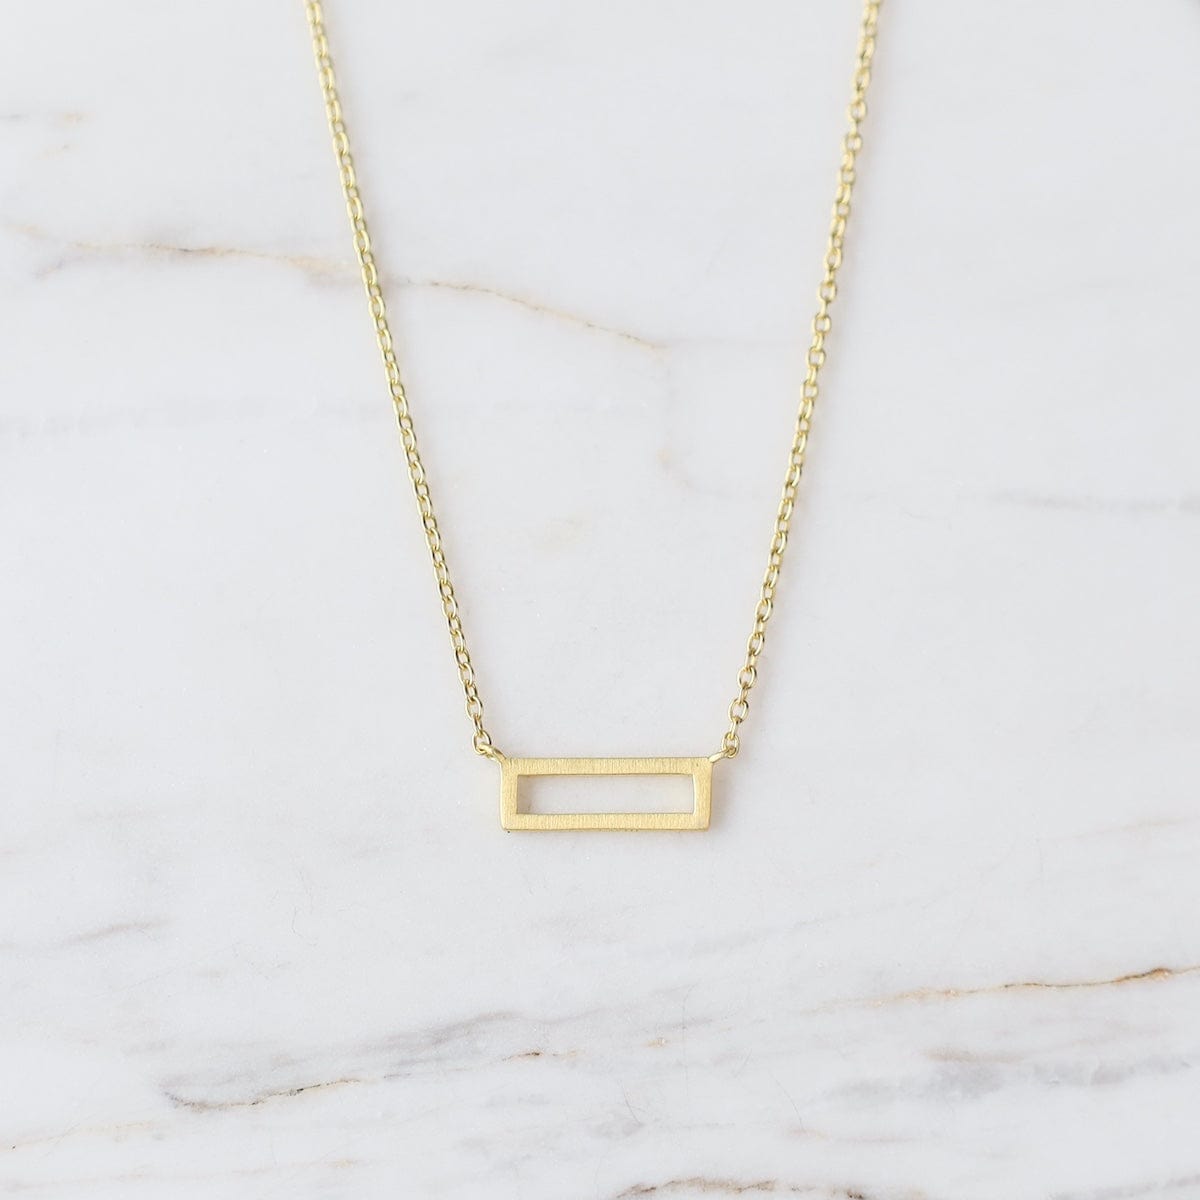 NKL-VRM Little Open Rectangle Necklace – Brushed Gold Vermeil